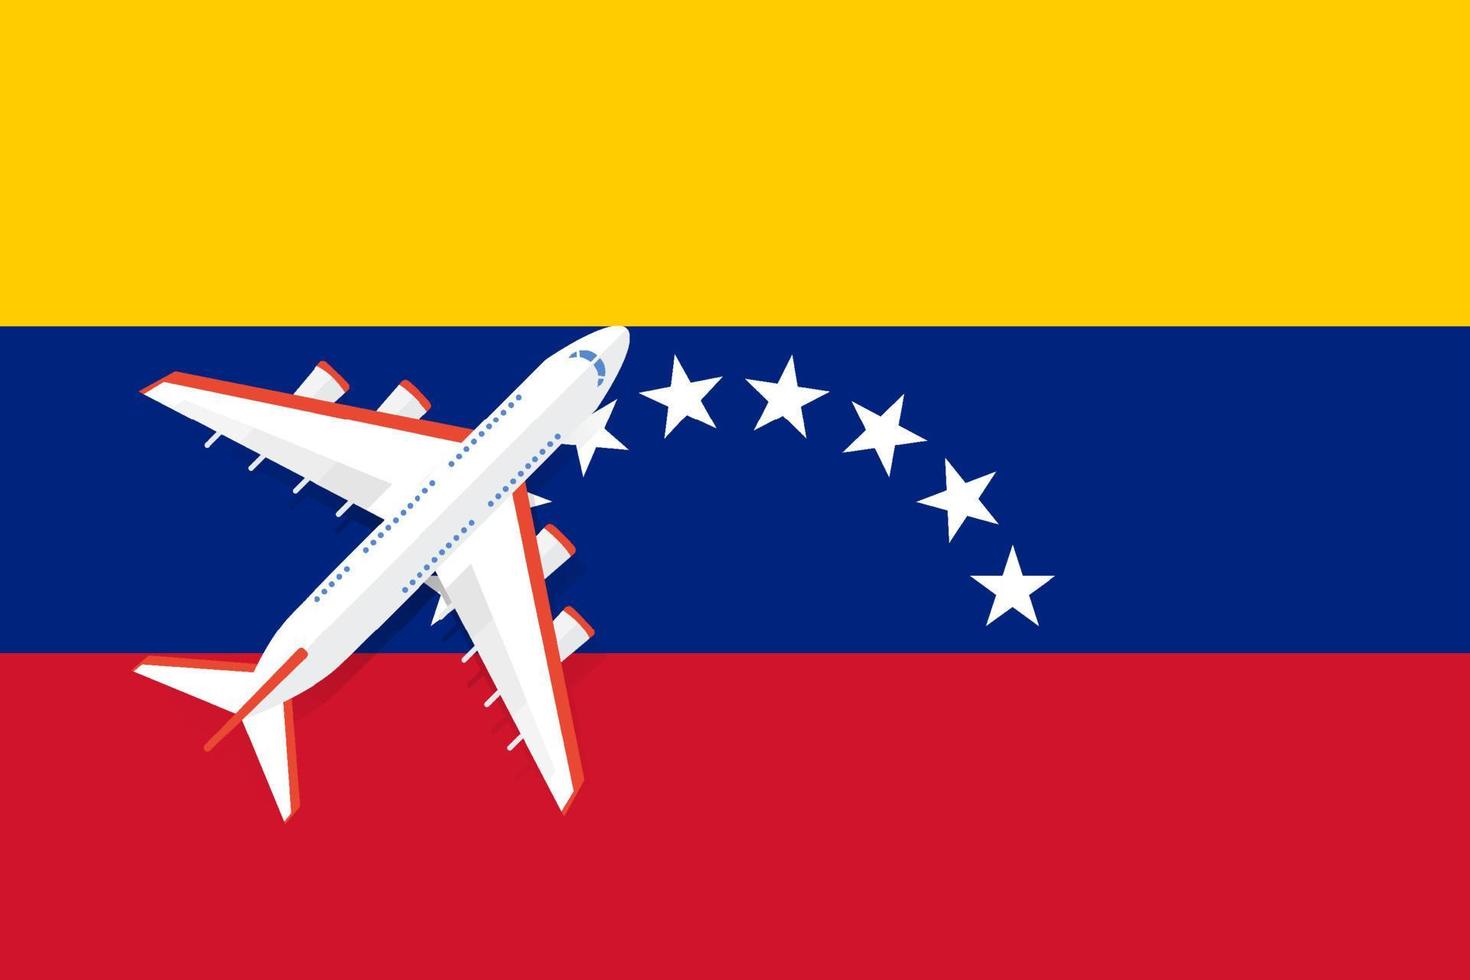 illustrazione vettoriale di un aereo passeggeri che sorvola la bandiera del venezuela. concetto di turismo e viaggi